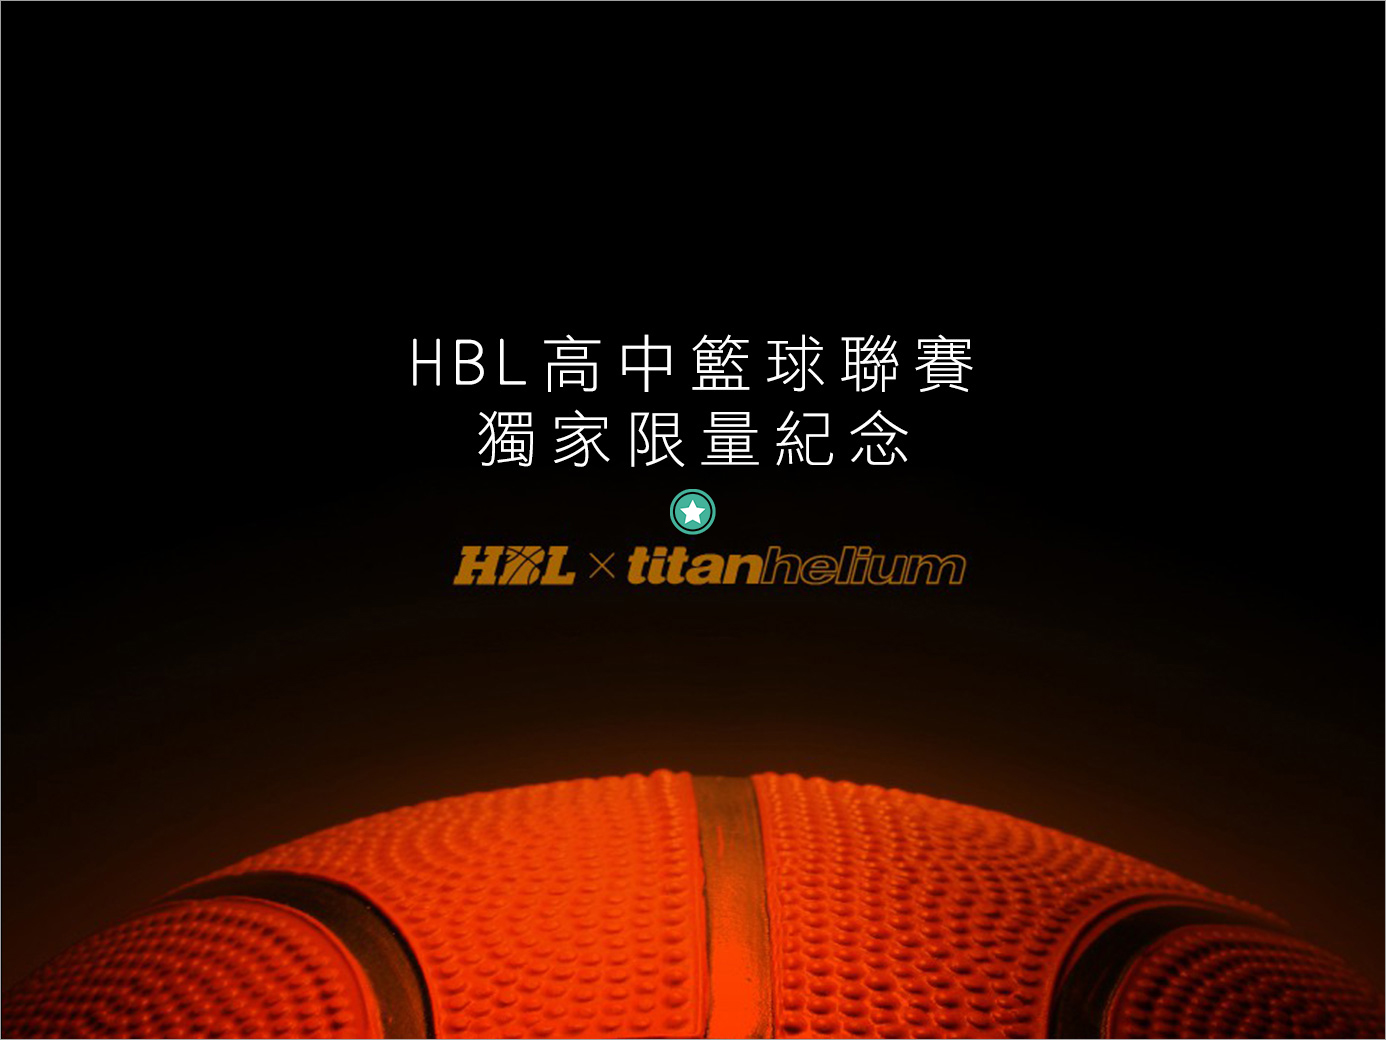 HBL高中籃球聯賽行之有年，為國內籃球運動培育向下紮根，提供了完善的舞台。下列有關HBL相關問題，歡